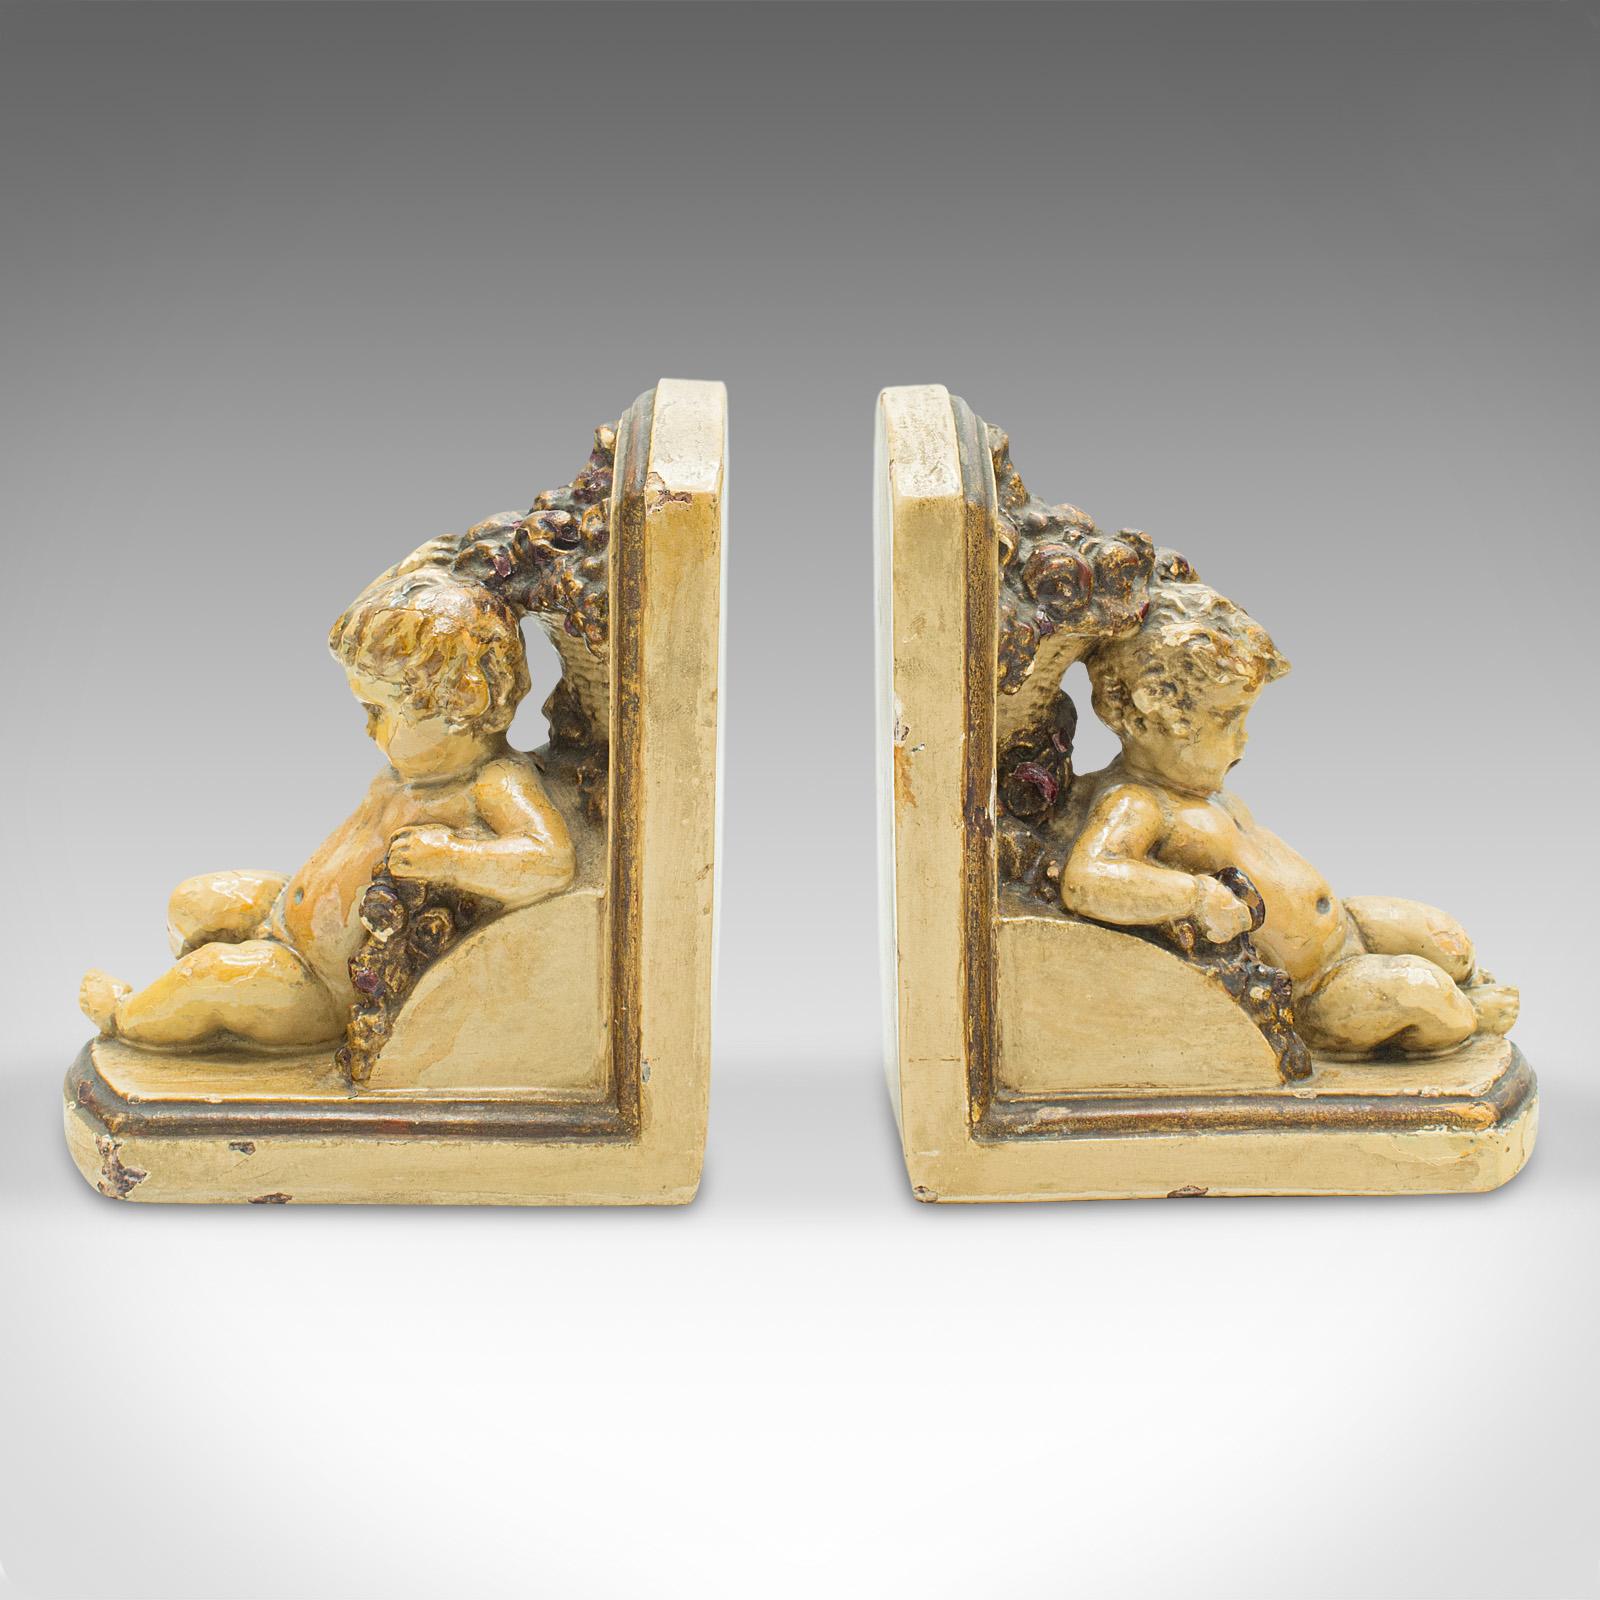 Dies ist ein Paar antiker Putto-Buchstützen. Eine italienische Buchablage mit Putten aus Gips im Grand-Tour-Geschmack, aus der frühen viktorianischen Zeit, um 1850.

Charmante Engelsfiguren lehnen an diesen unverwechselbaren Buchstützen
Mit